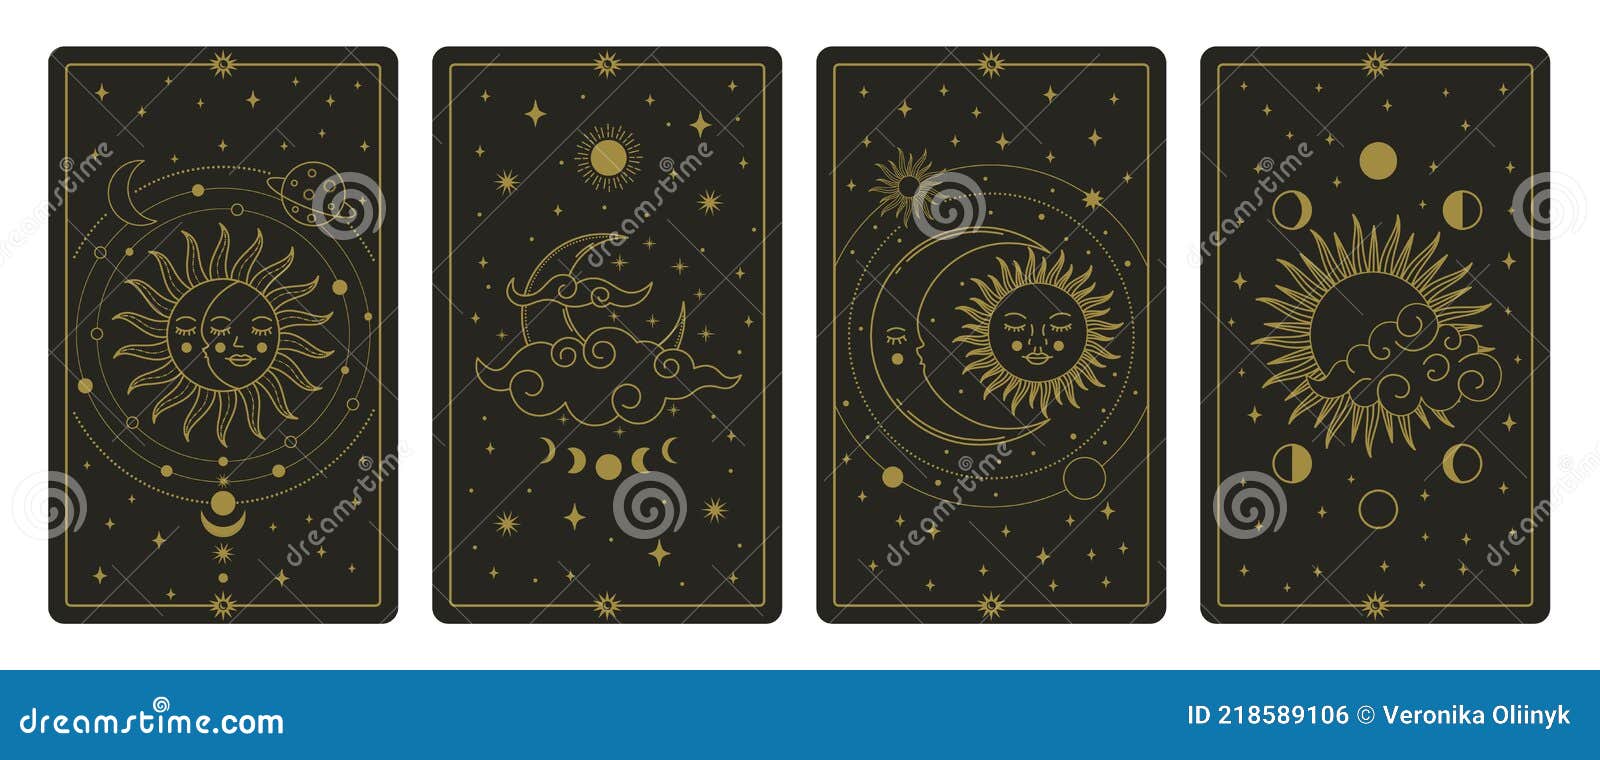 moon and sun tarot cards. mystical hand drawn celestial bodies cards, magic tarot card   set. magical